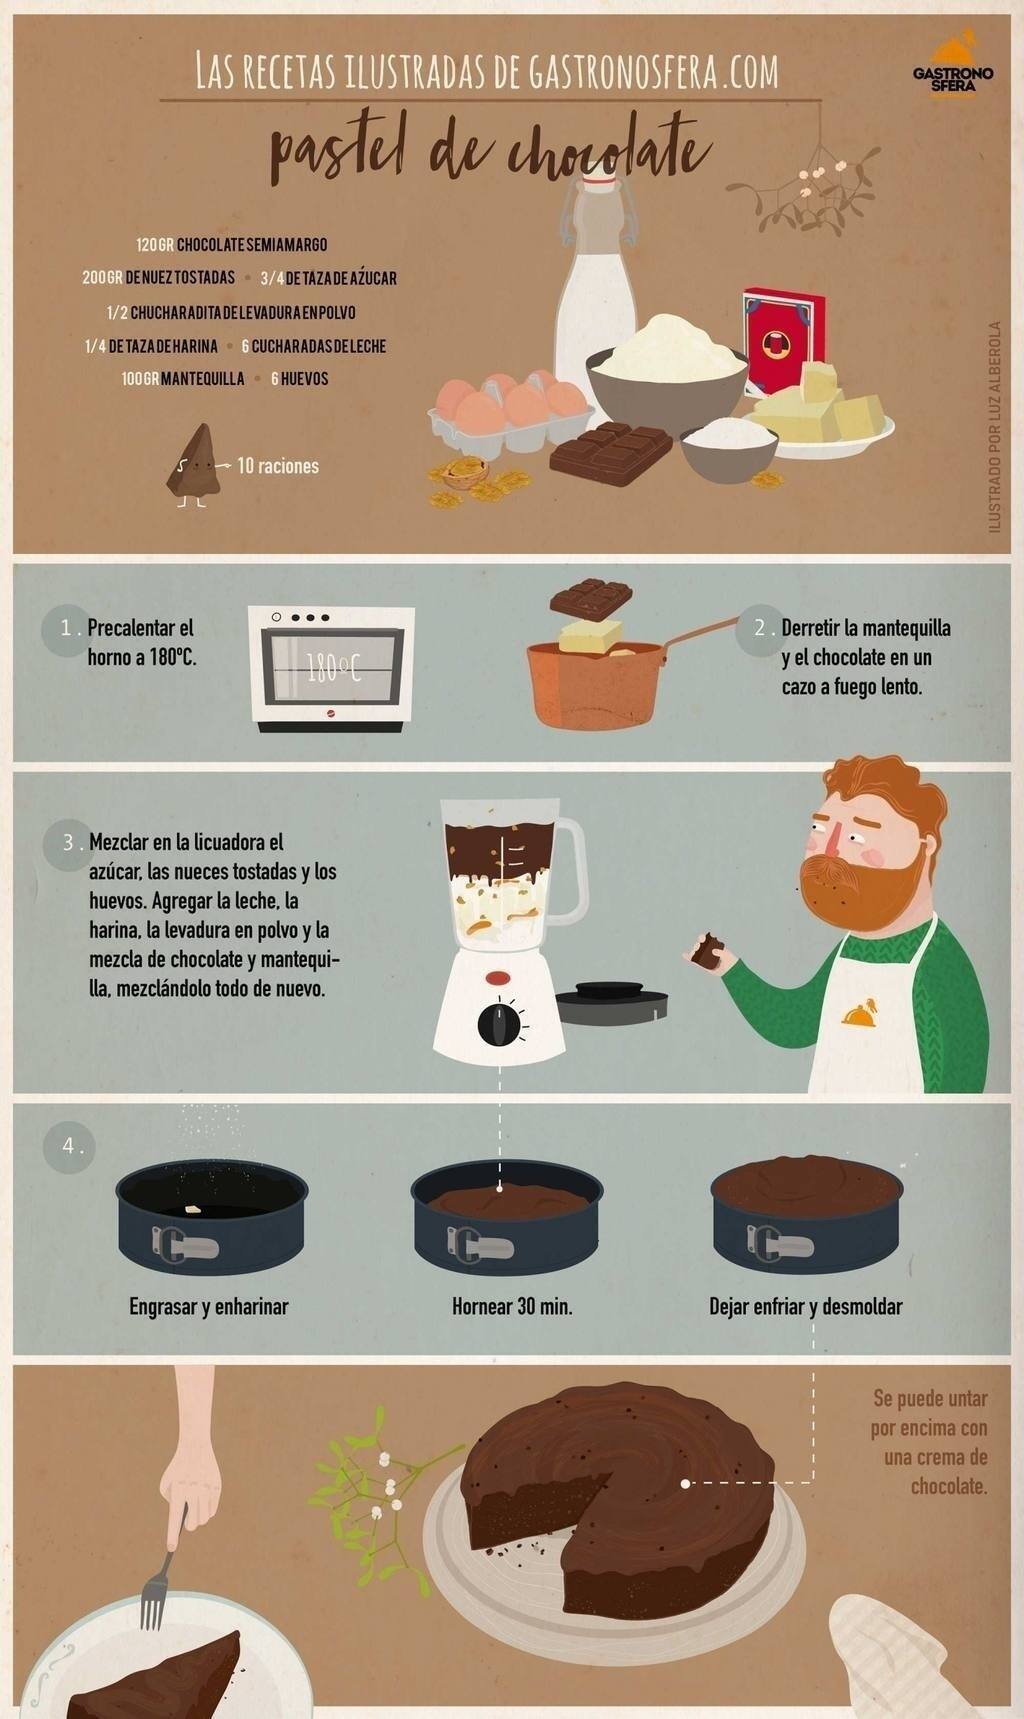 Cómo preparar un pastel de chocolate paso a paso | Gastronosfera